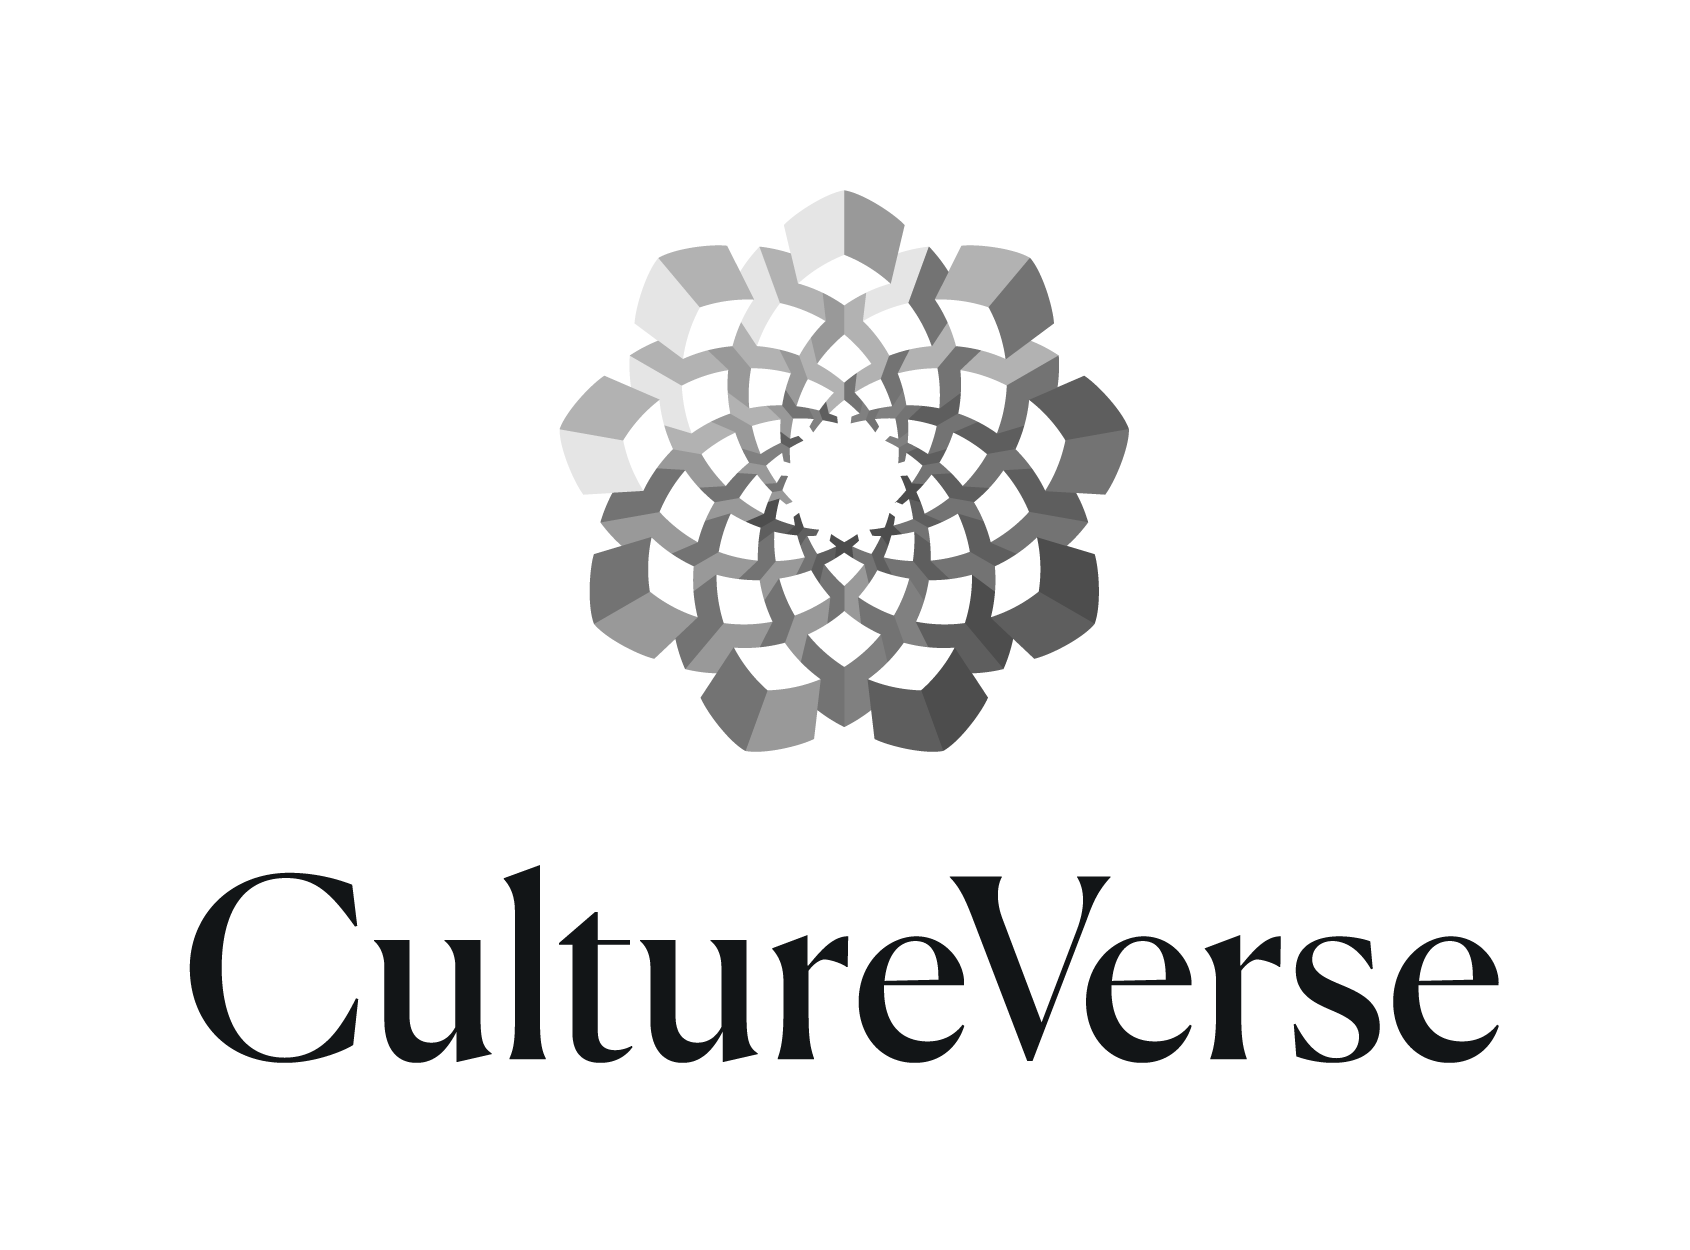 CultureVerse